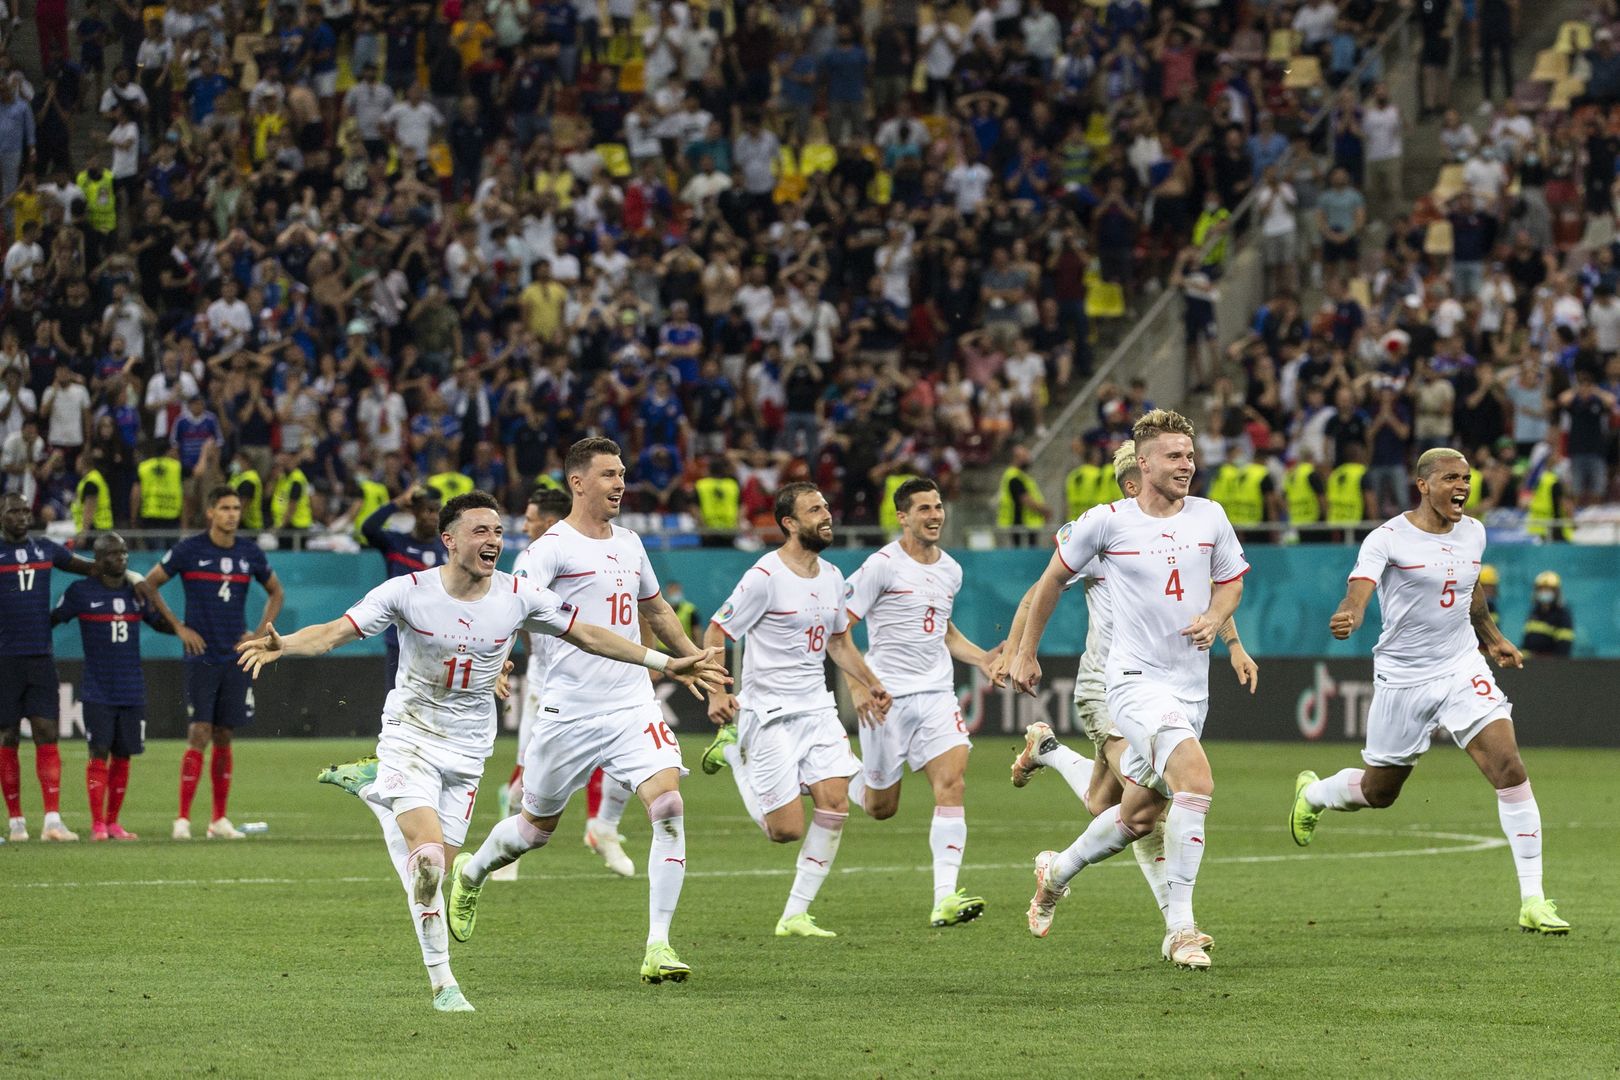 Au revoir! Sensacja w meczu Francja - Szwajcaria na Euro 2020